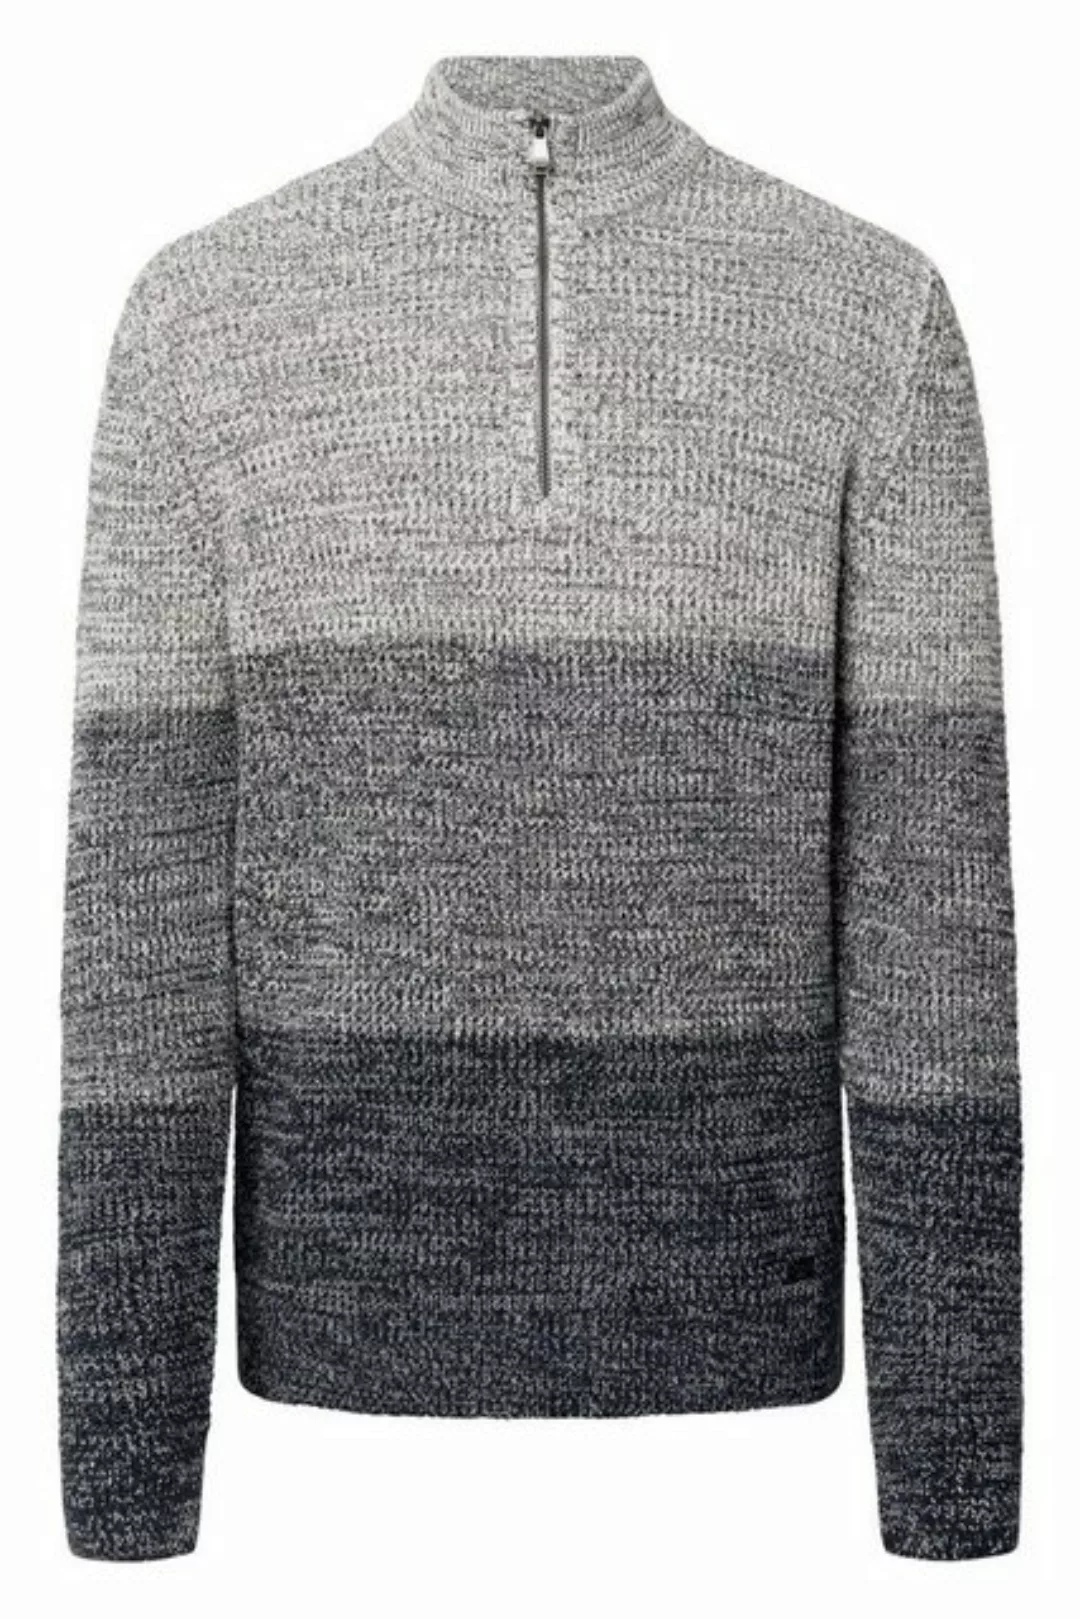 Joop Jeans Sweatshirt 15 JJK-10Damiano 10016940 günstig online kaufen